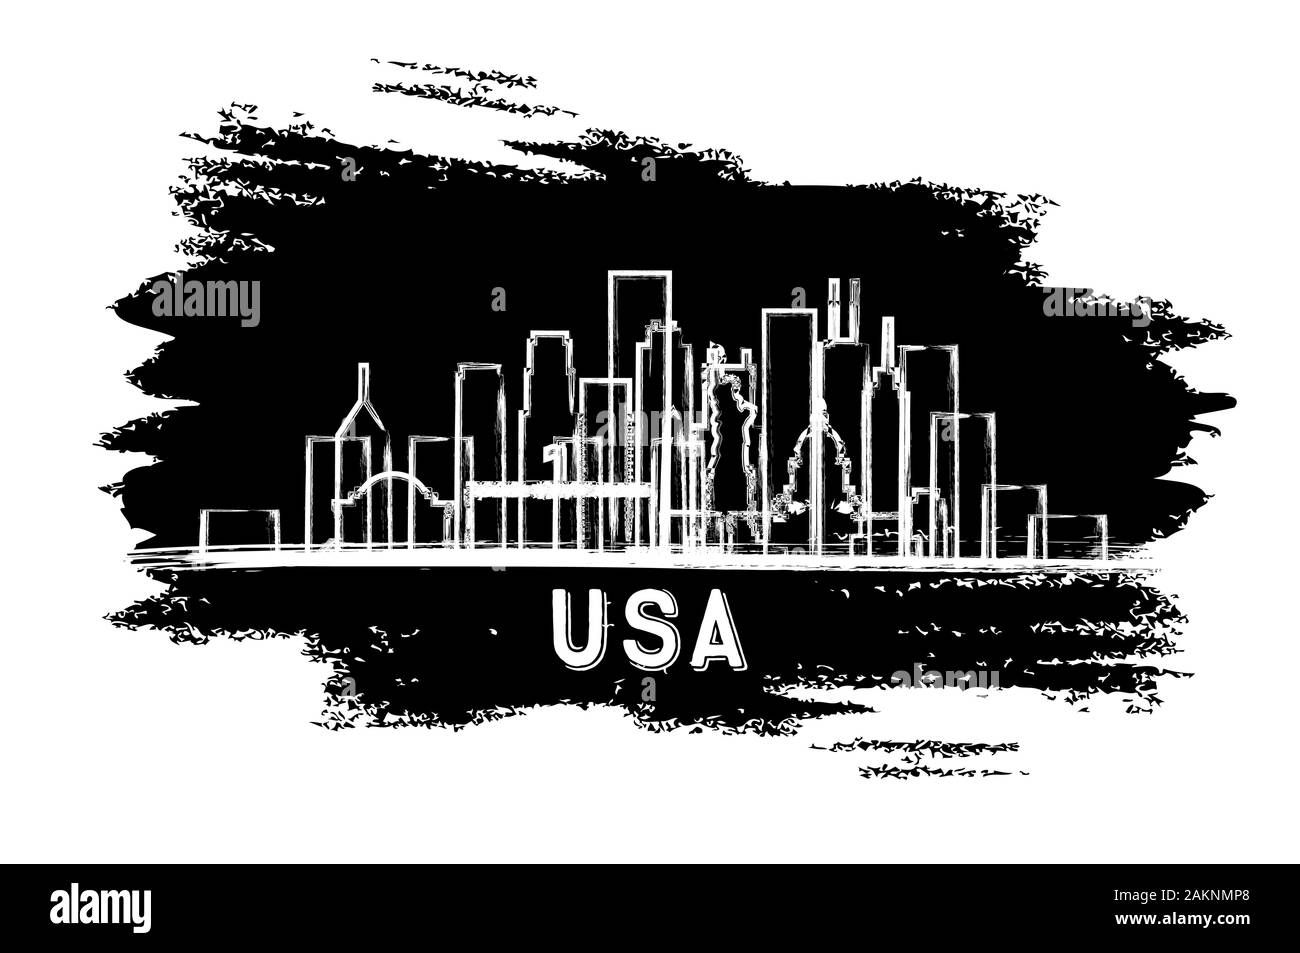 USA Skyline der Stadt Silhouette. Hand gezeichnete Skizze. Vector Illustration. Business Travel und Tourismus Konzept mit historischer Architektur. USA Stadtbild. Stock Vektor